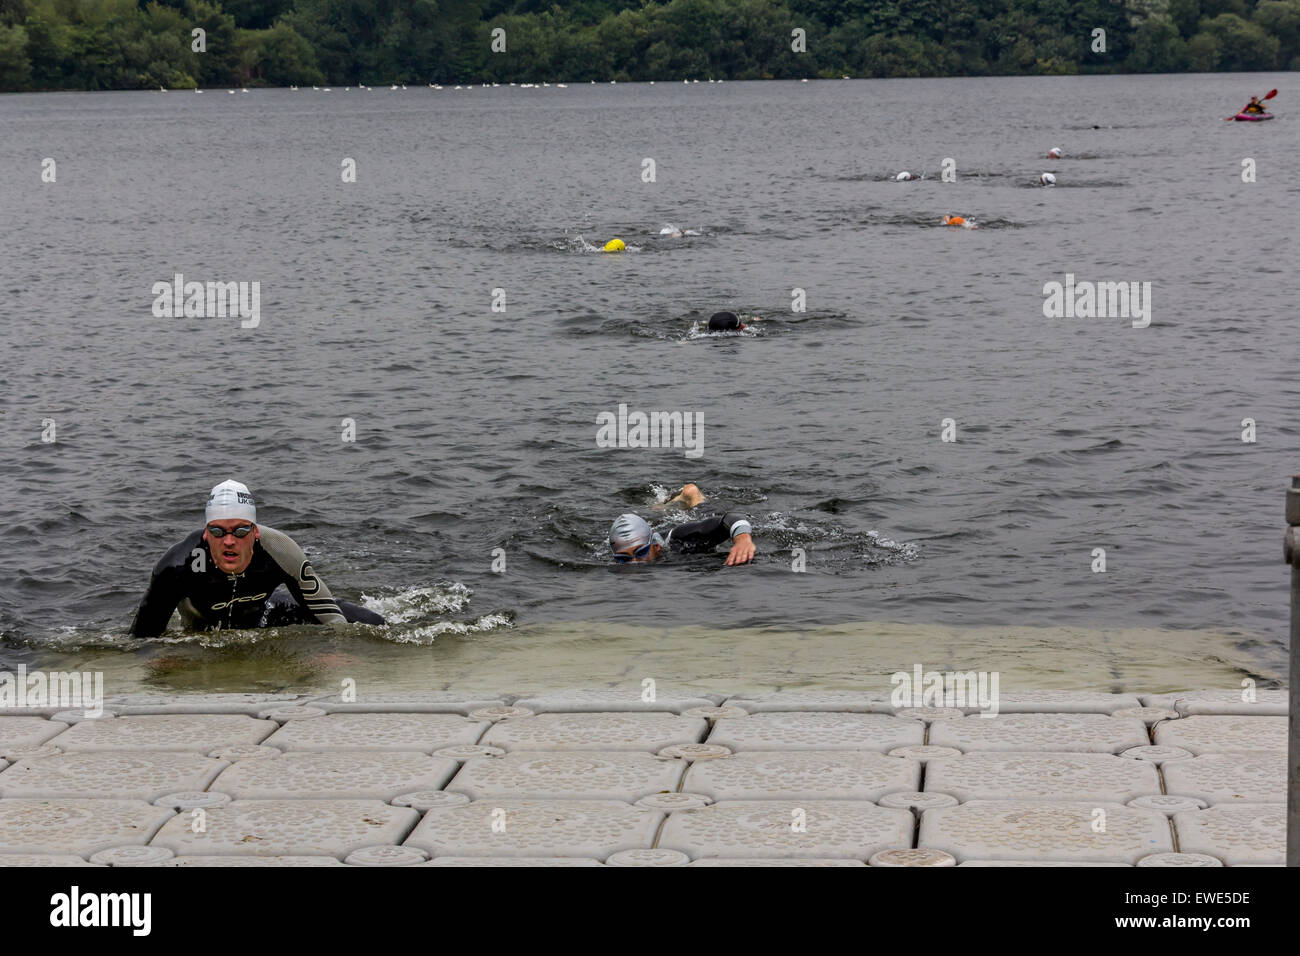 Los nadadores de aguas abiertas de completar un chapuzón. Foto de stock